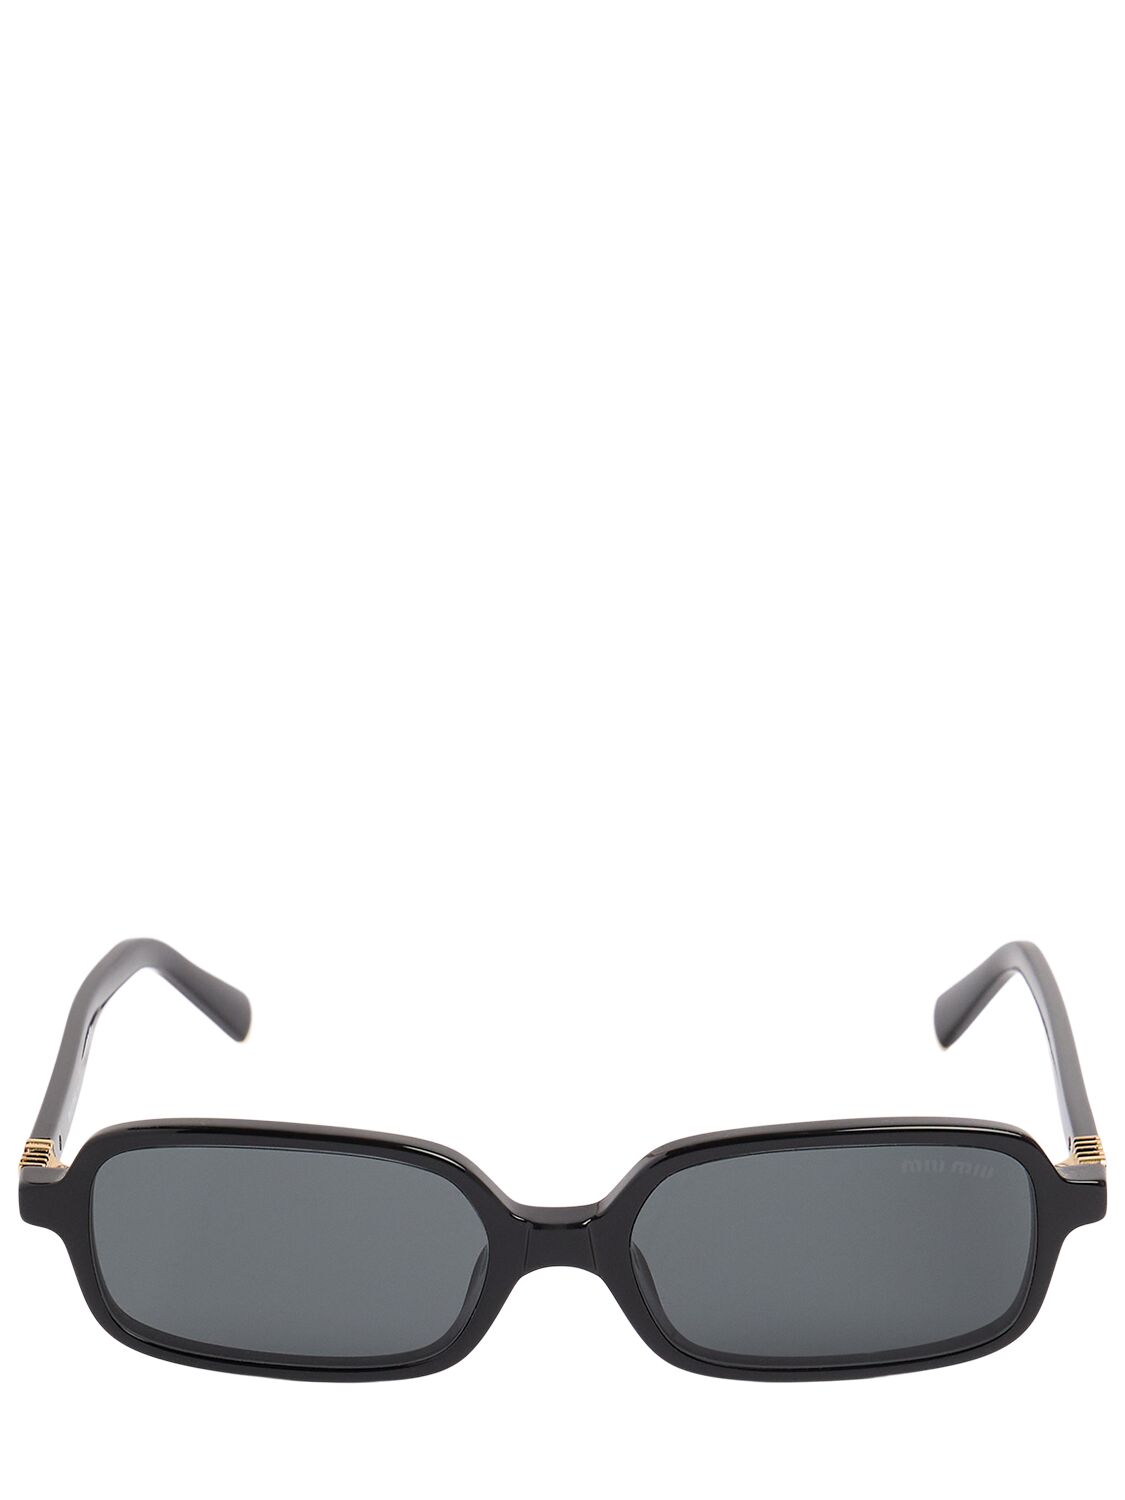 Miu Miu Square Acetate Sunglasses In Black